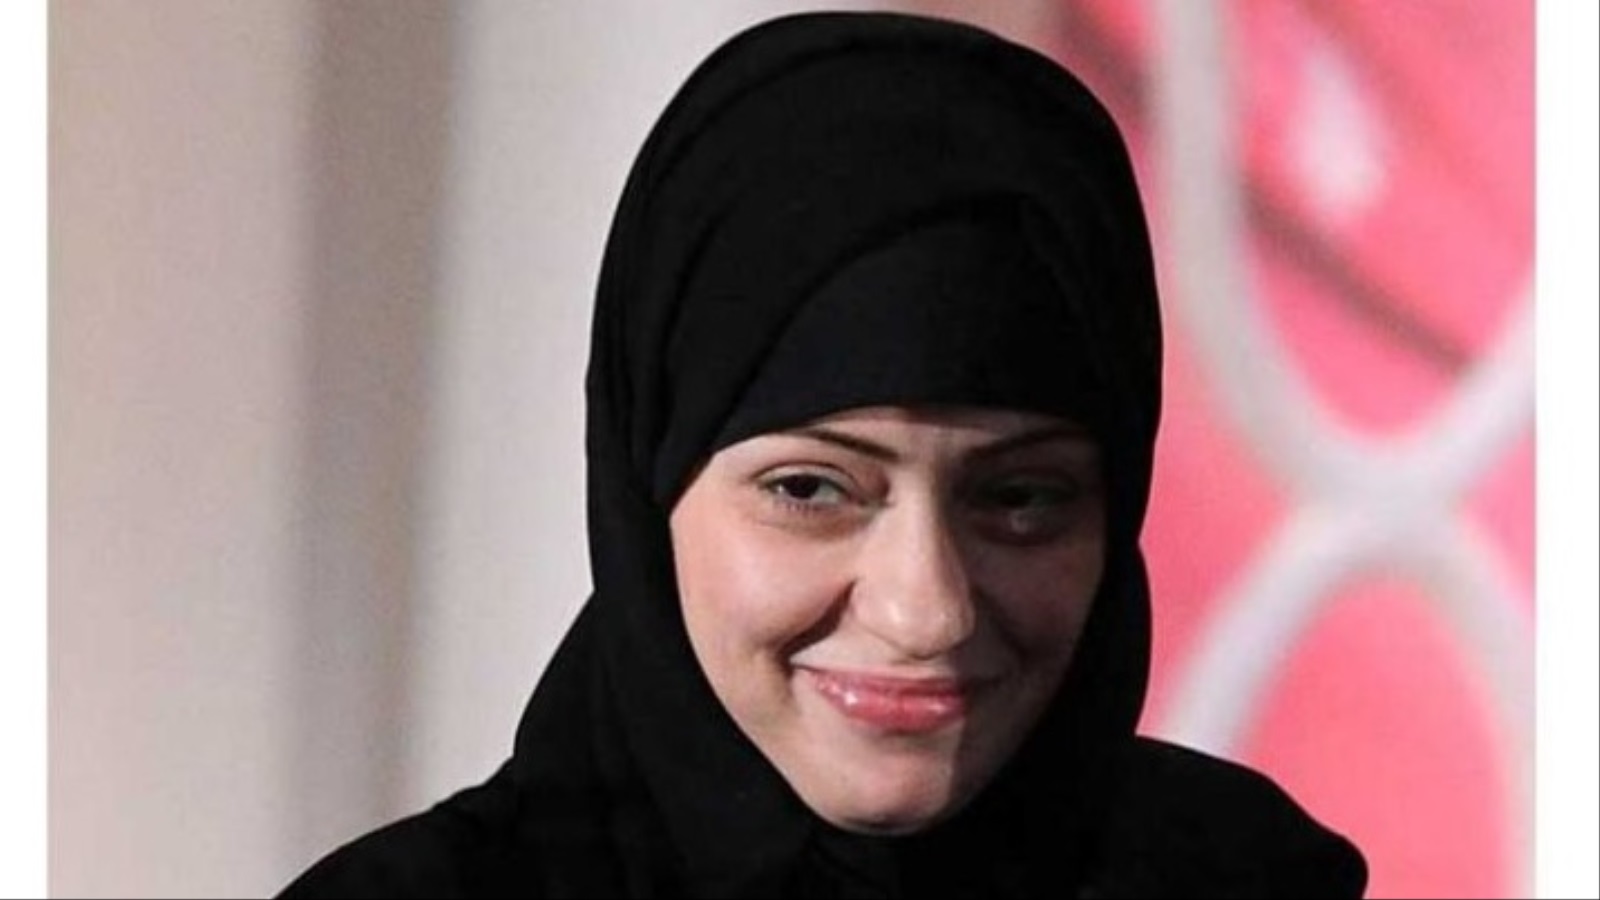 ‪صورة متداولة في مواقع التواصل الاجتماعي للناشطة السعودية إسراء الغمغام المعتقلة منذ عام 2015، التي طالبت النيابة العامة السعودية بإصدار حكم ضدها يقضي بـ